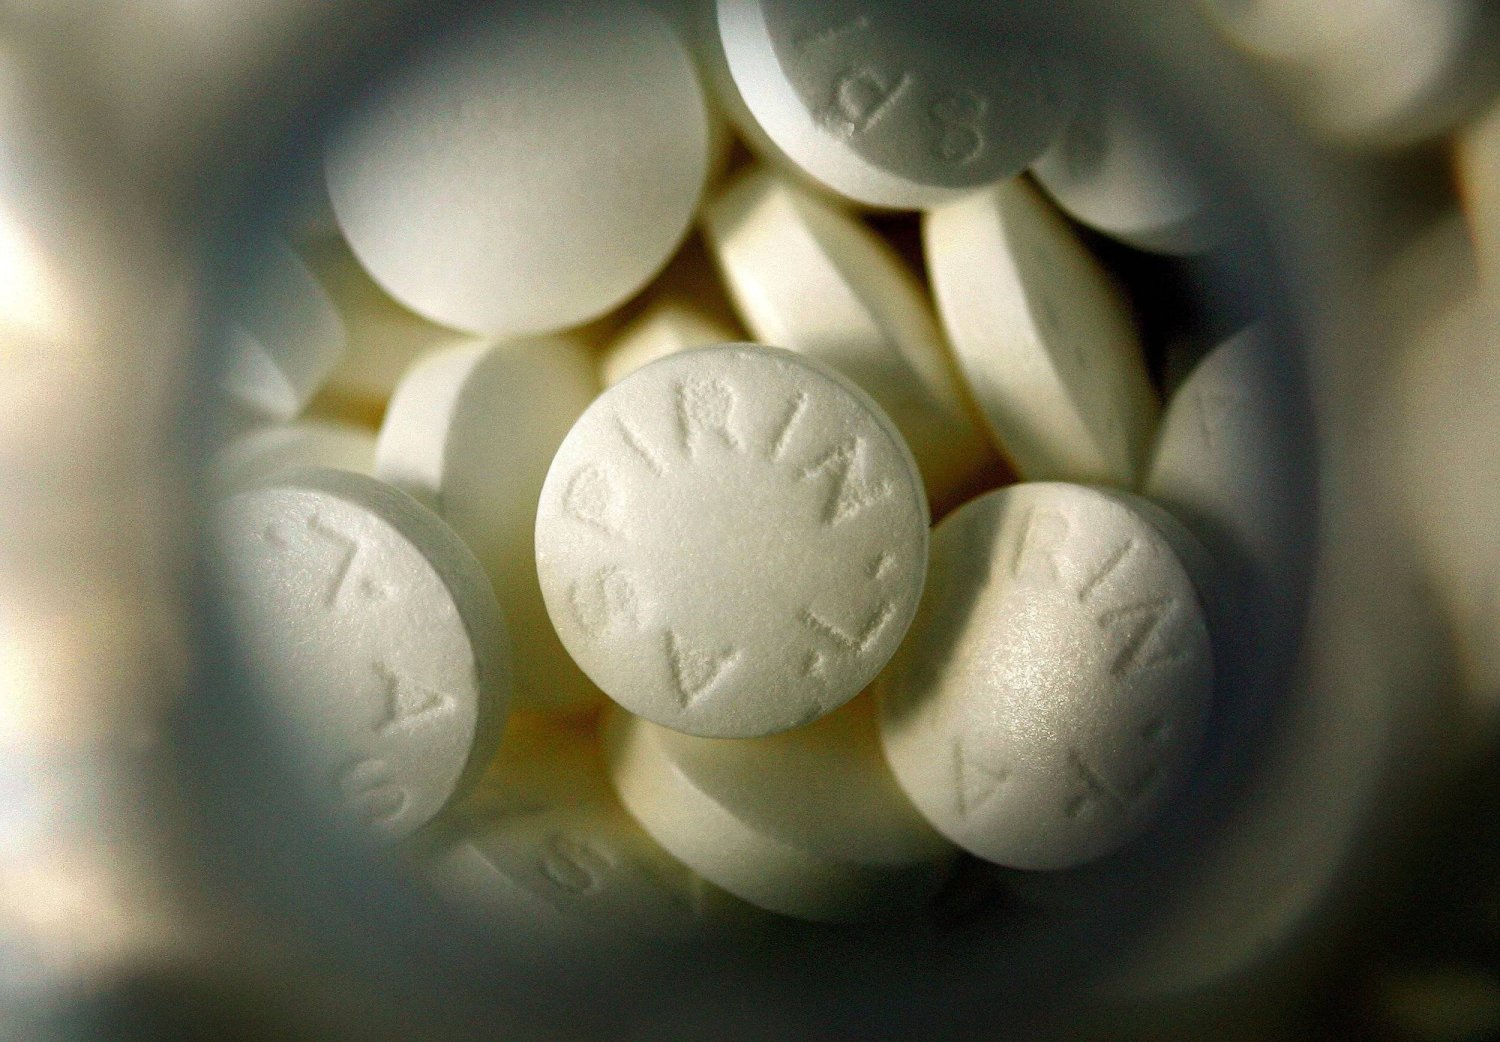 الأسبرين دواء شائع يُستخدم لعلاج حالات عدّة (رويترز)